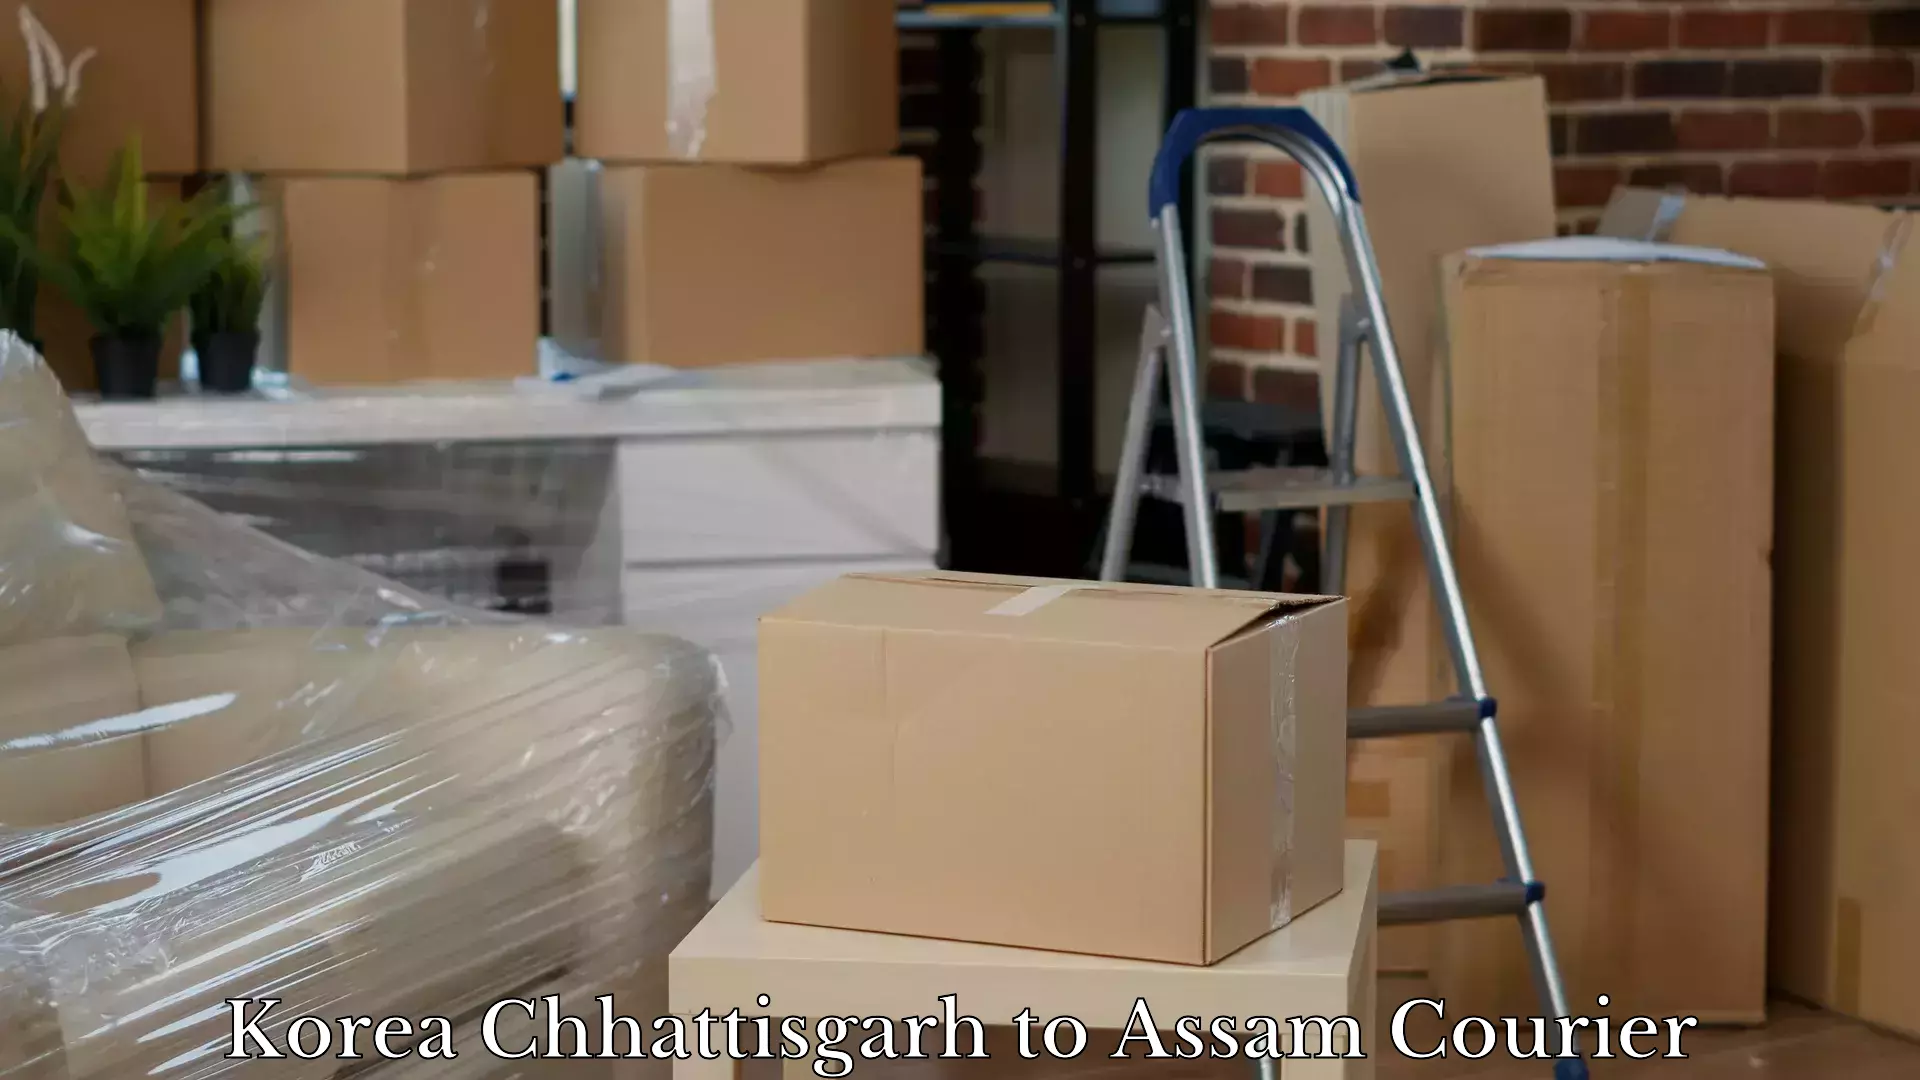 Luggage delivery providers Korea Chhattisgarh to Thelamara